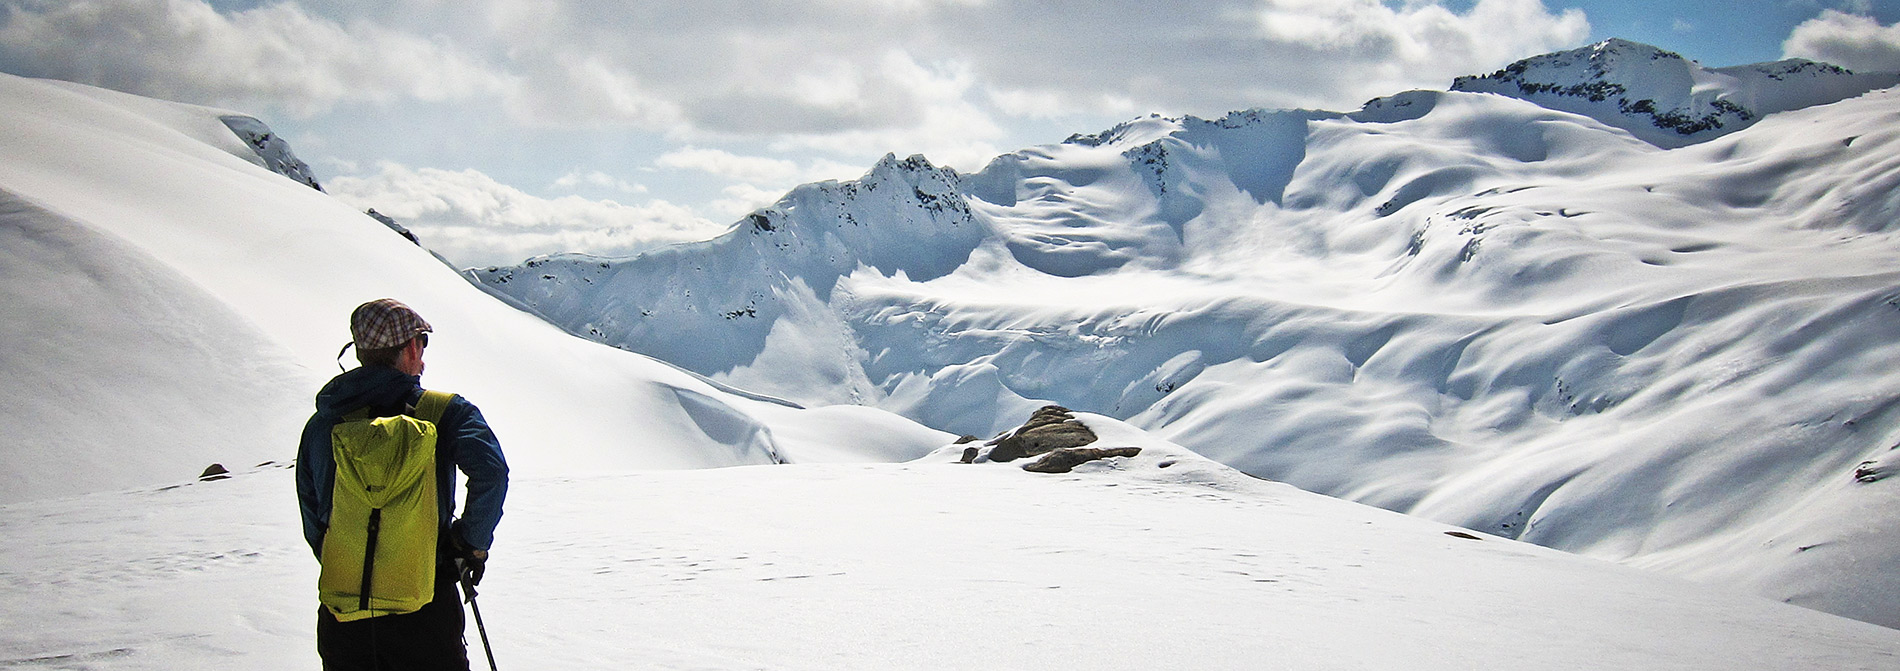 whistler avalanche course